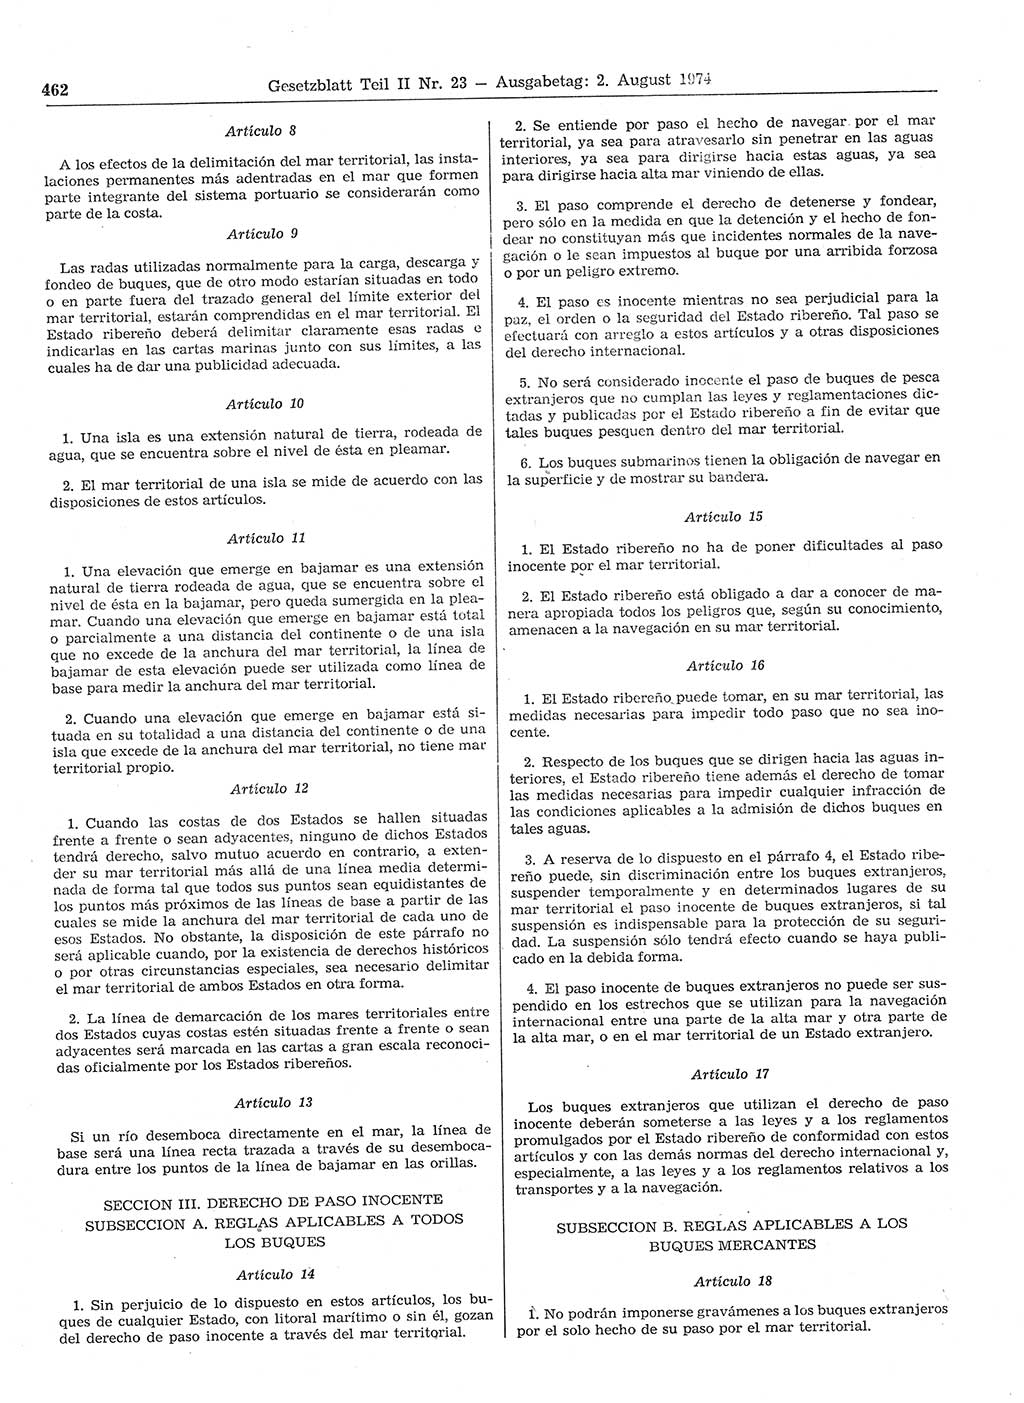 Gesetzblatt (GBl.) der Deutschen Demokratischen Republik (DDR) Teil ⅠⅠ 1974, Seite 462 (GBl. DDR ⅠⅠ 1974, S. 462)